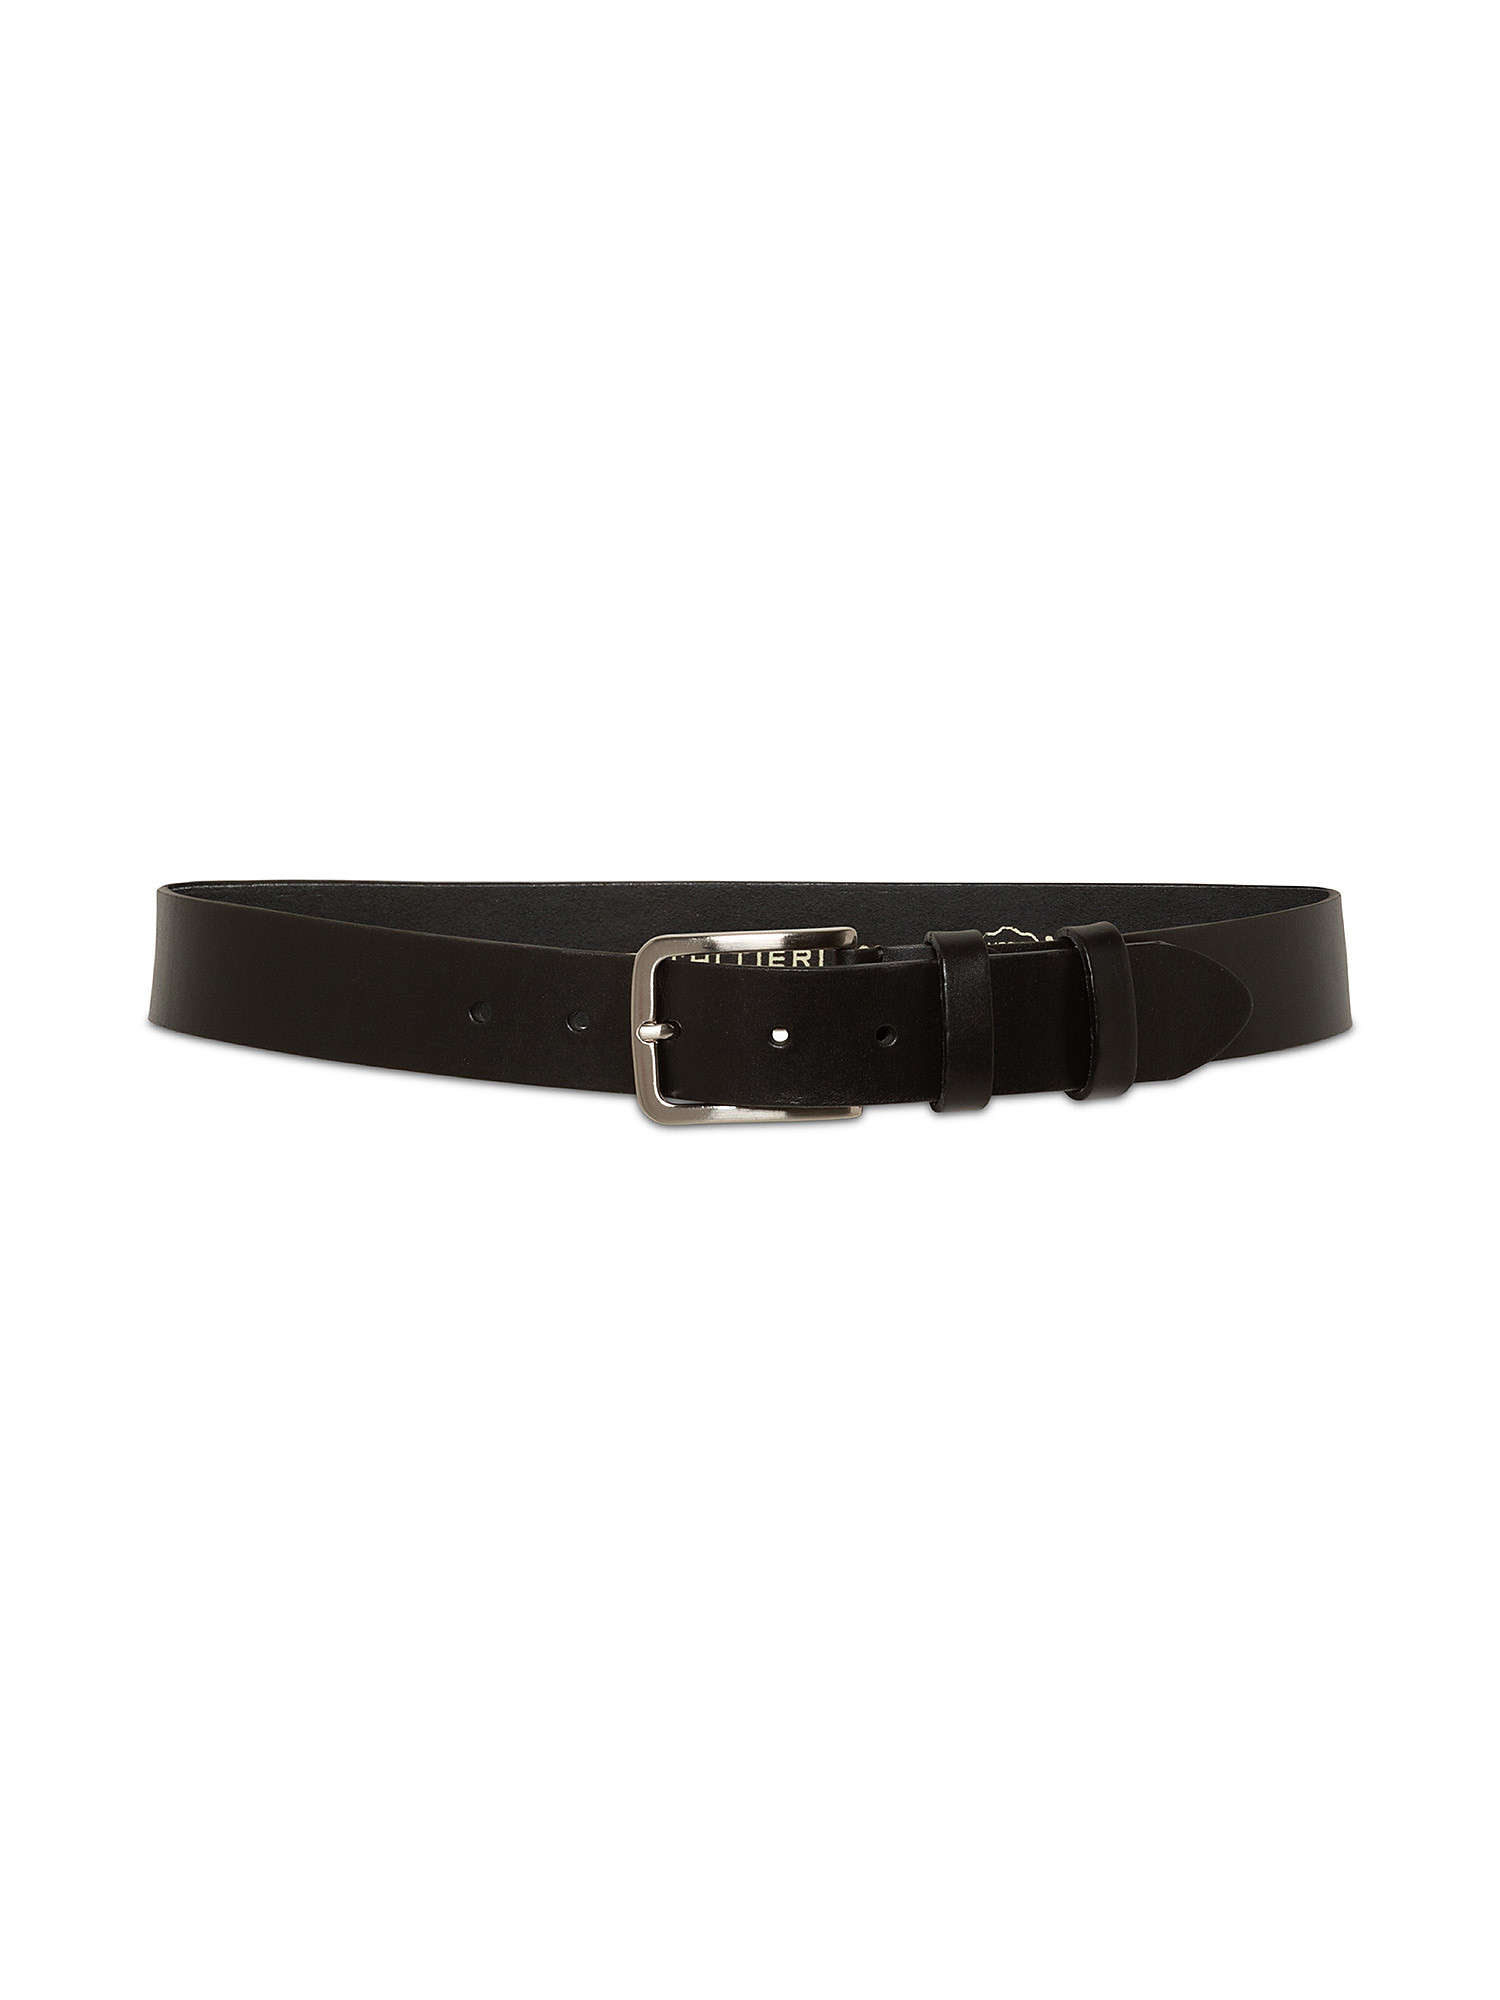 Real-leather belt, Black, large image number 1